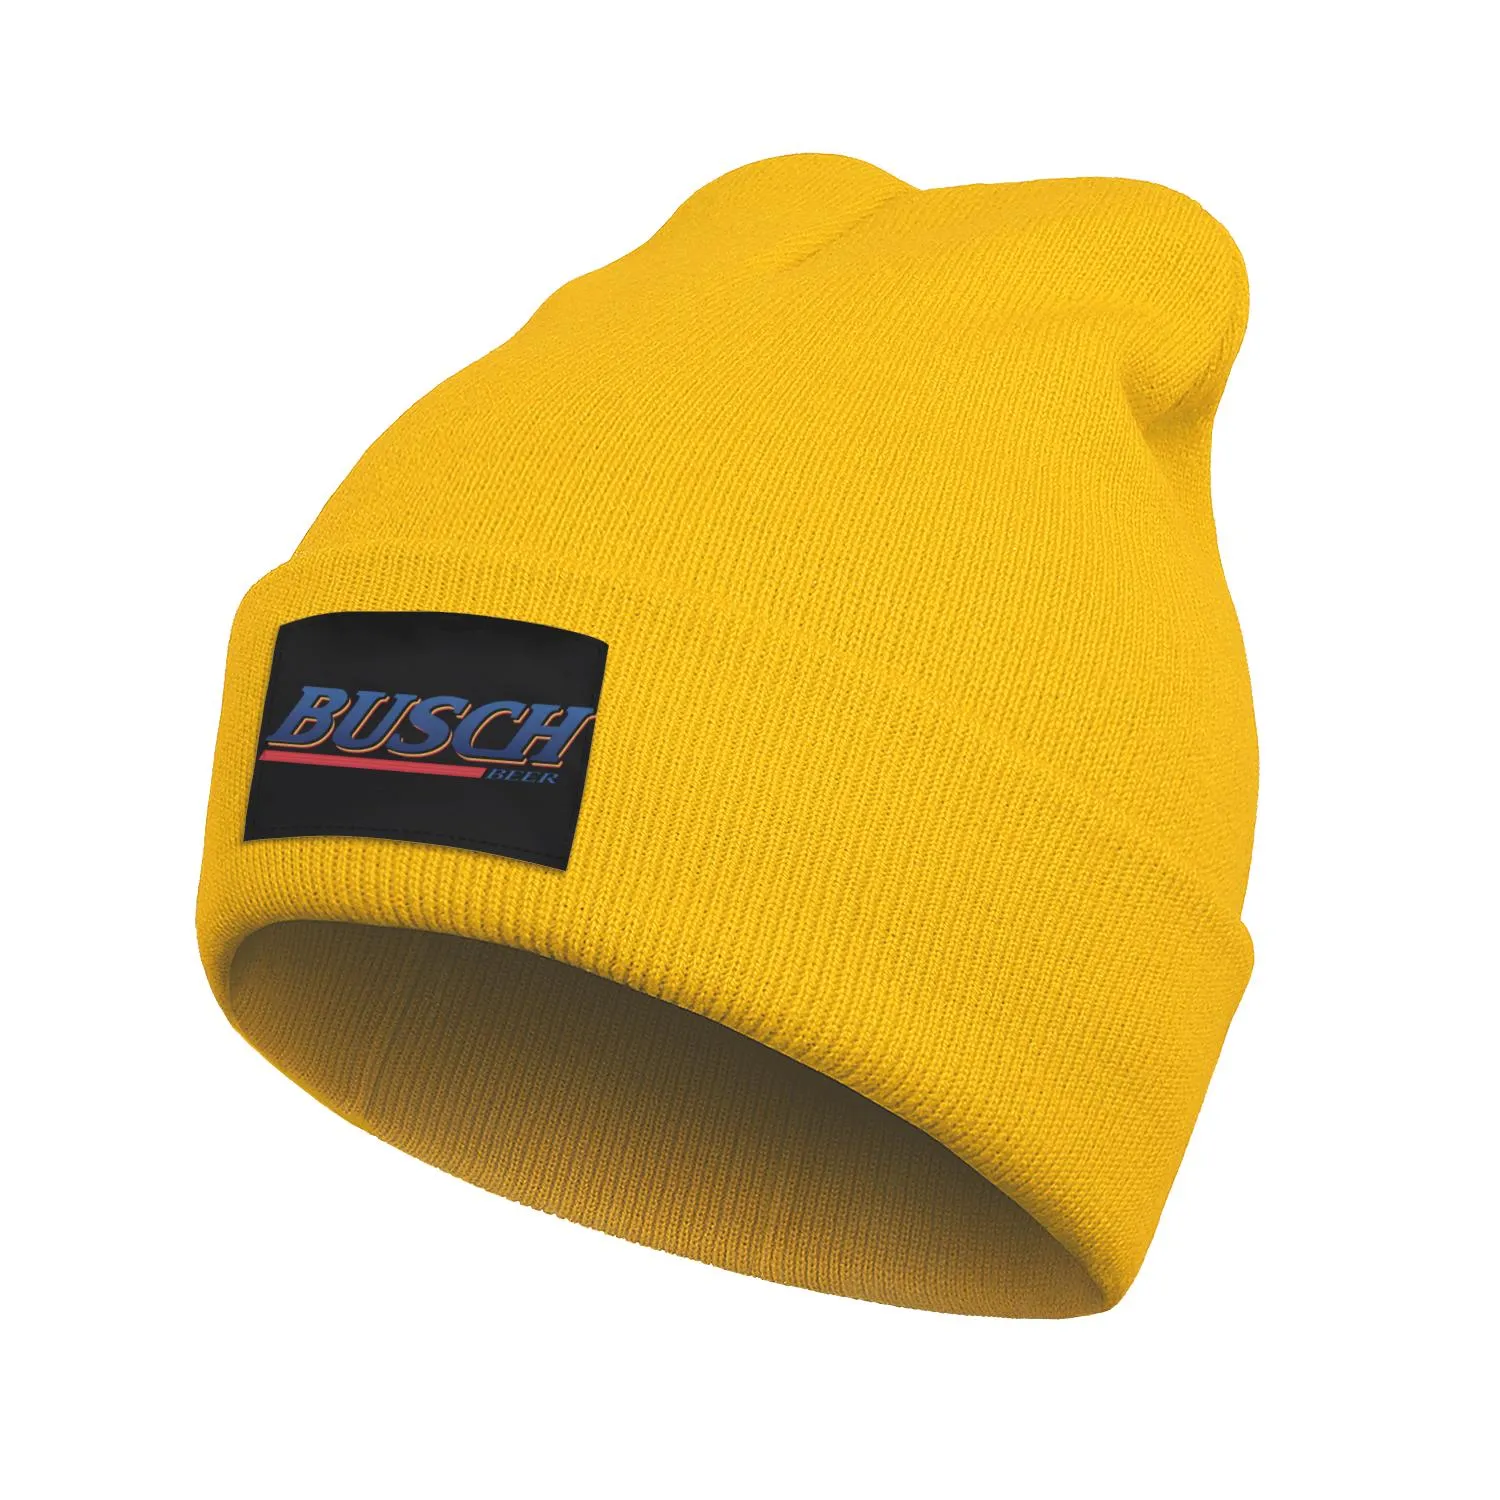 Mode Busch bière légère logo hiver chaud bonnet crâne chapeaux unisexe Logo1615377